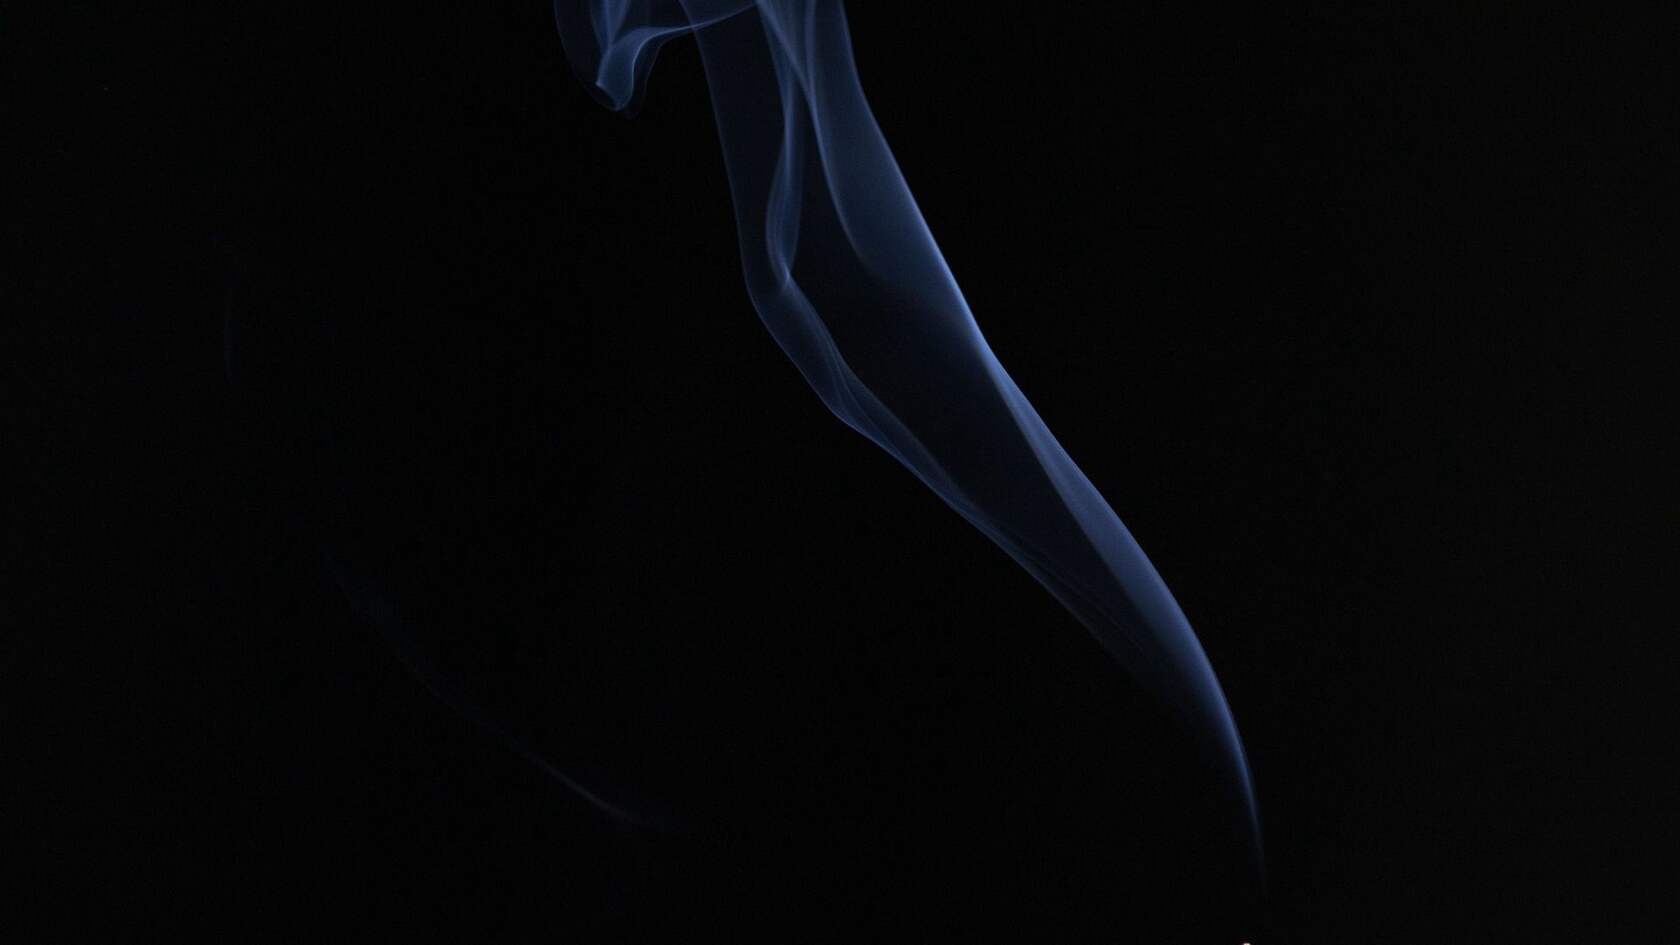 烟 烟雾 袅绕 黑色背景 简约烟雾艺术摄影壁纸图片套图3